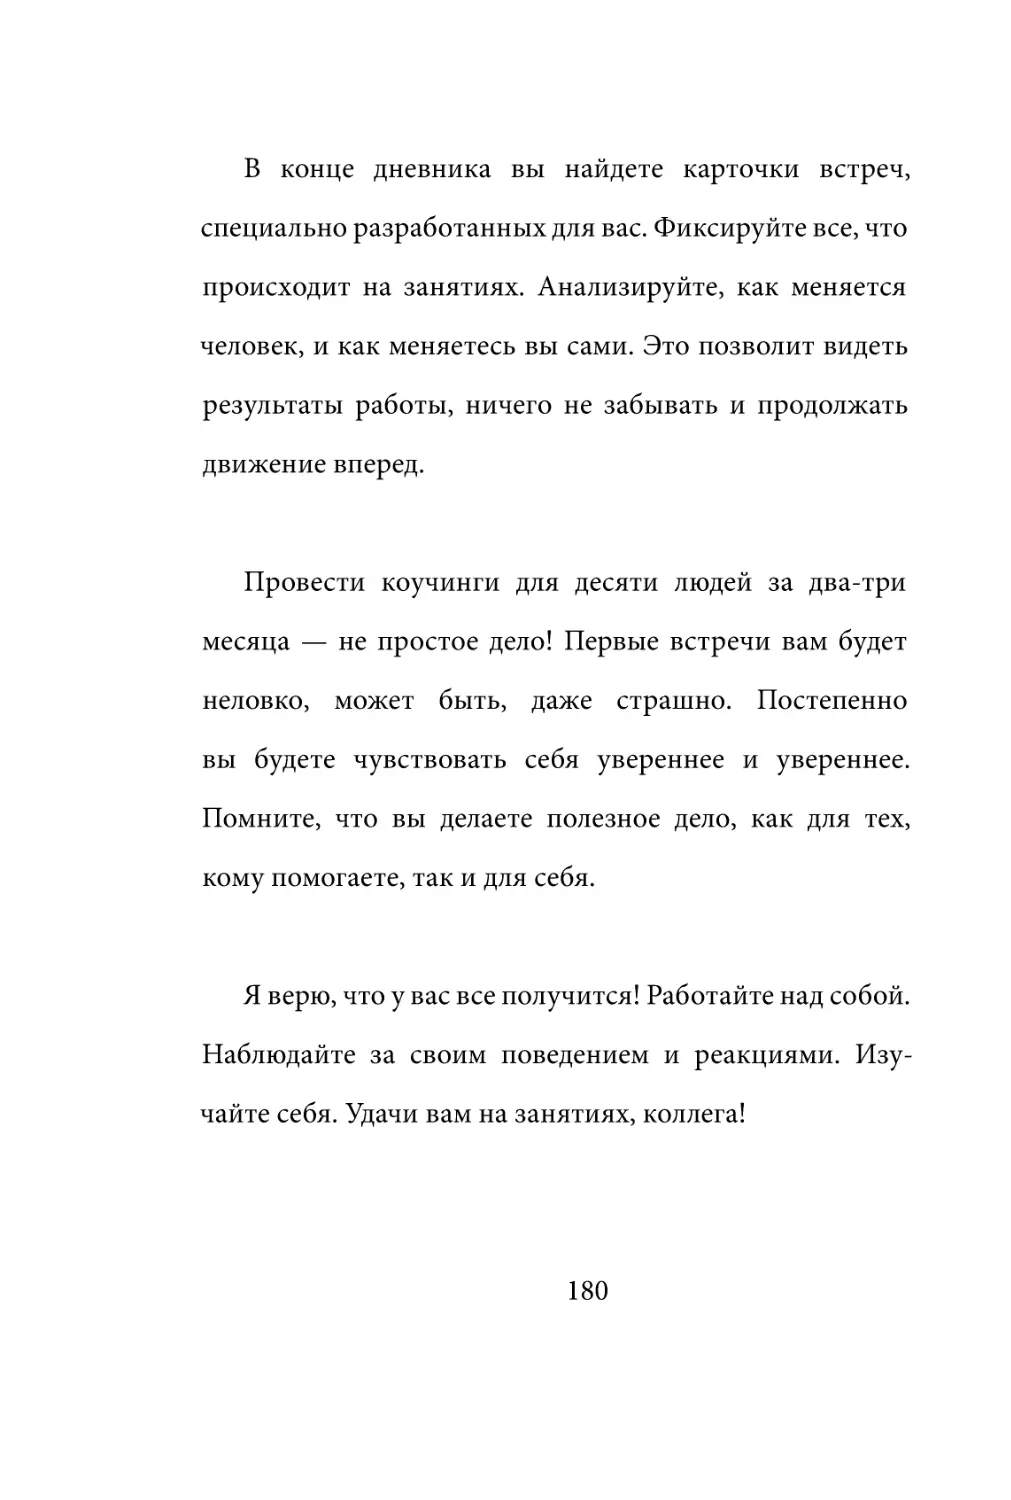 Sergey_Filippov_Dnevnik_samorazvitia_Evolyutsia_Vnutrennego_Sostoyania_180.pdf (p.180)